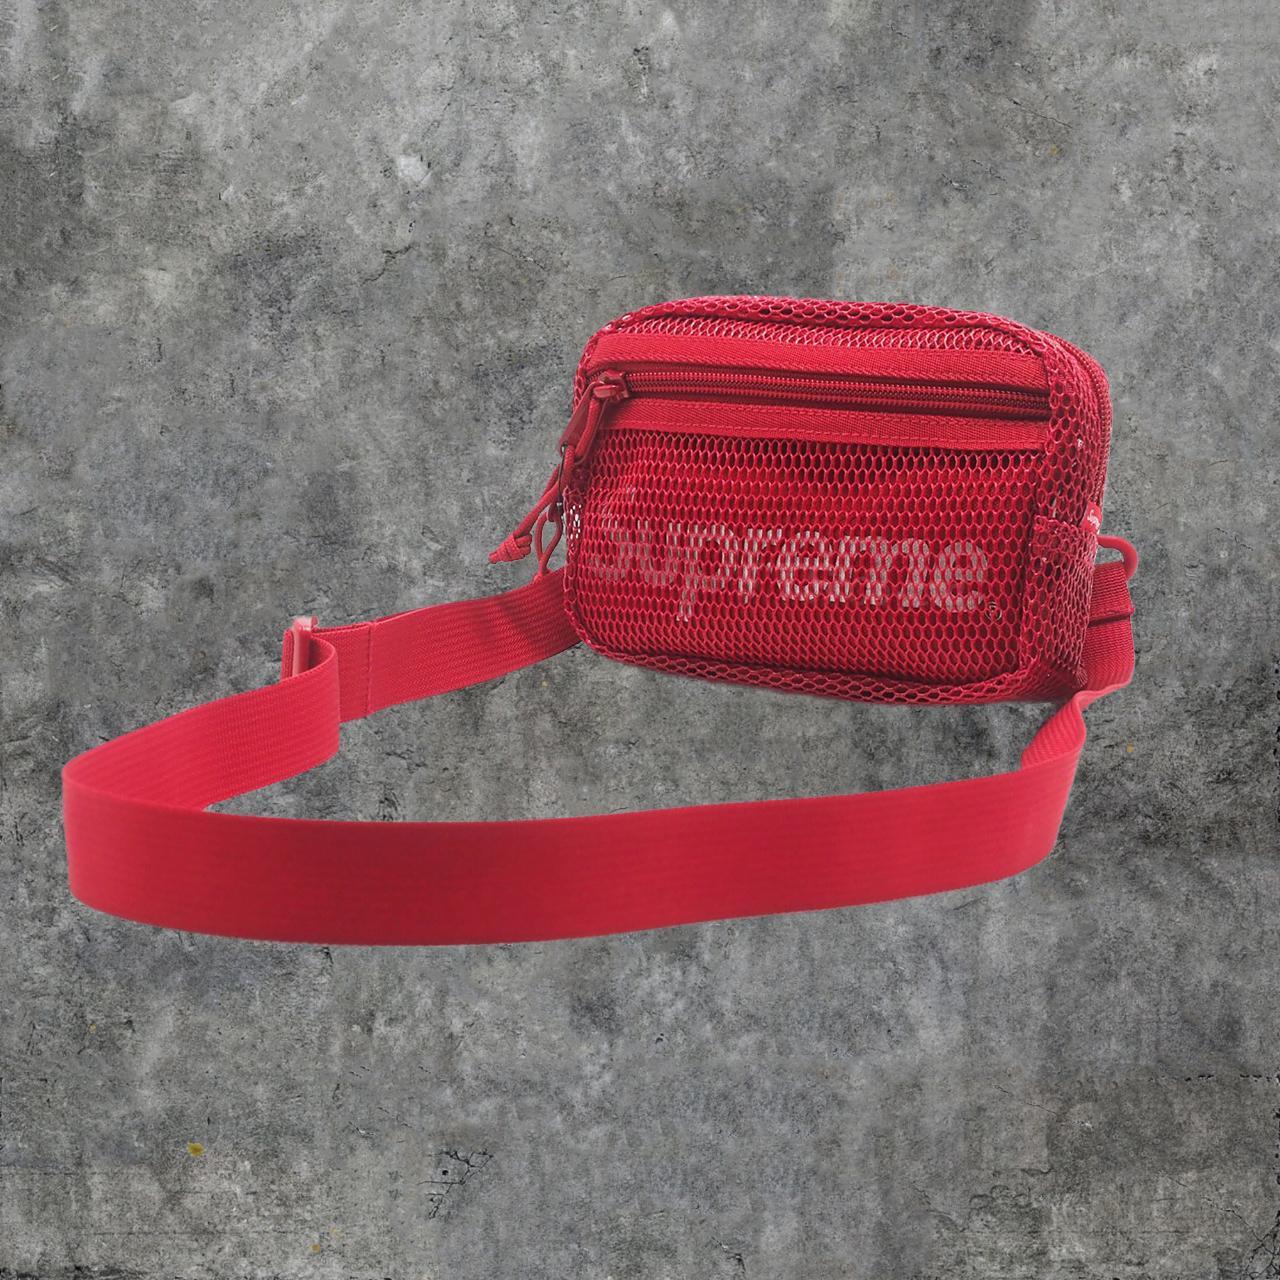 Supreme Small Logo Waist Bag - Red